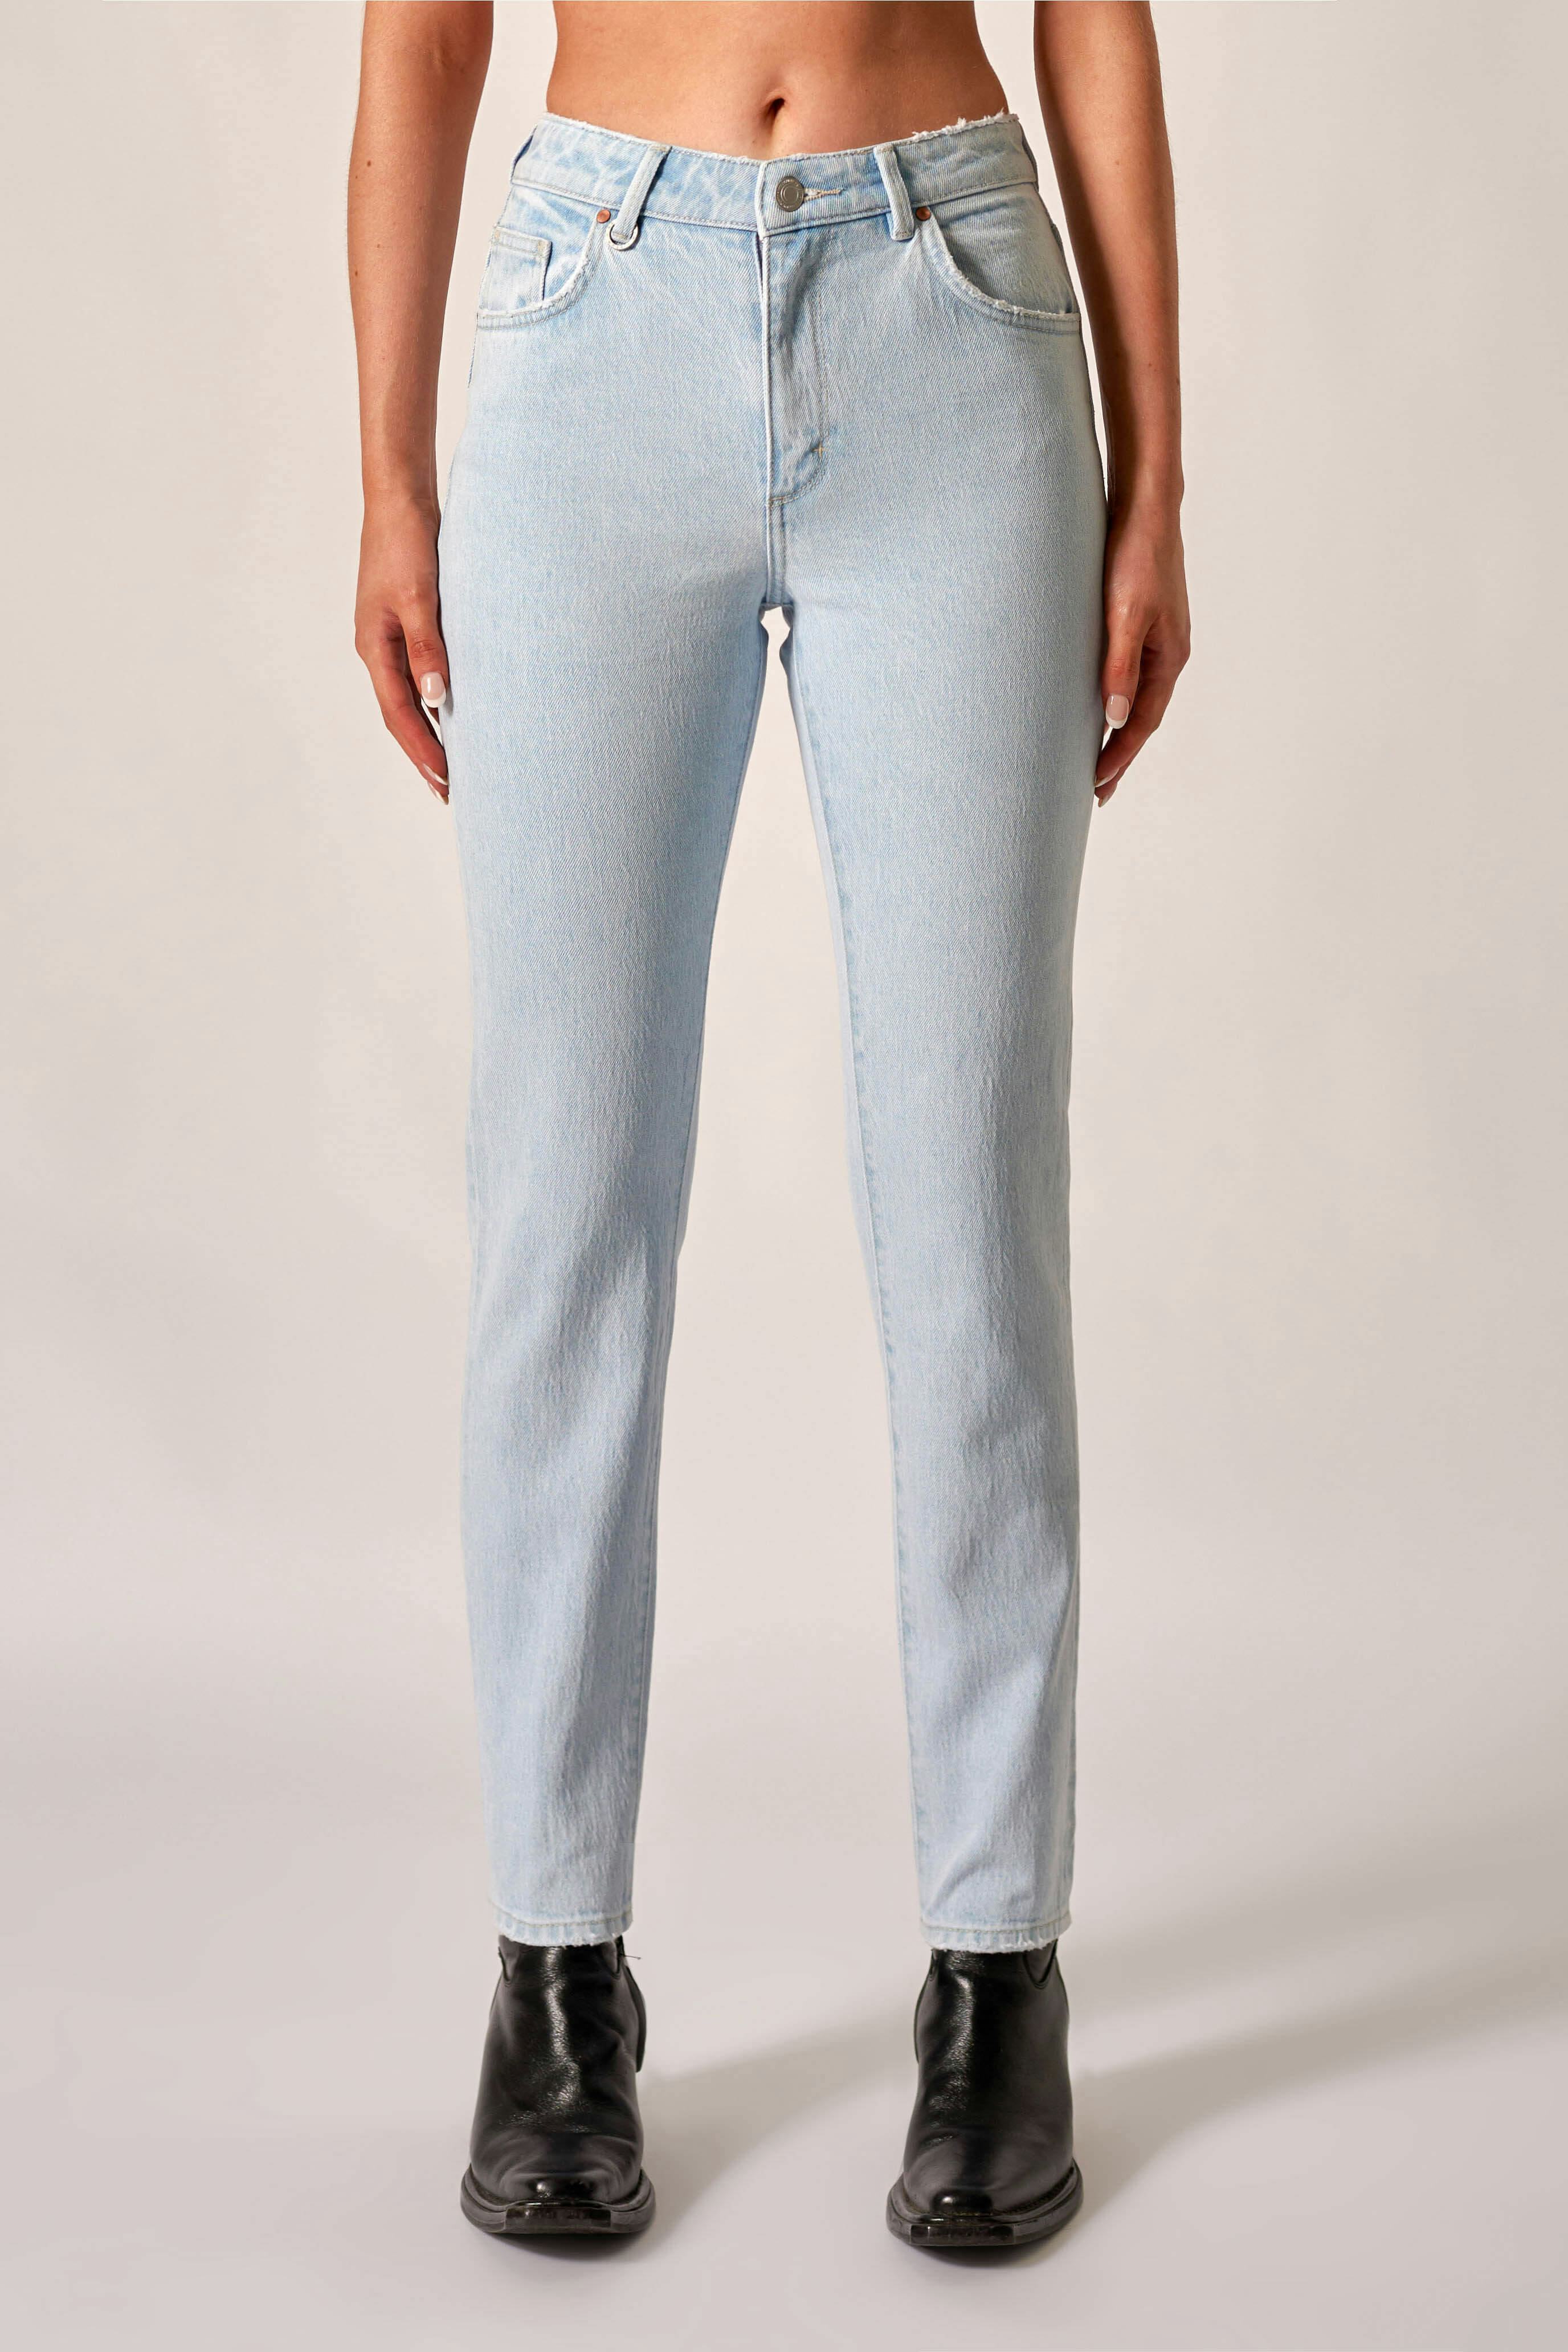 Lexi Straight - Ozone Neuw light grey womens-jeans 